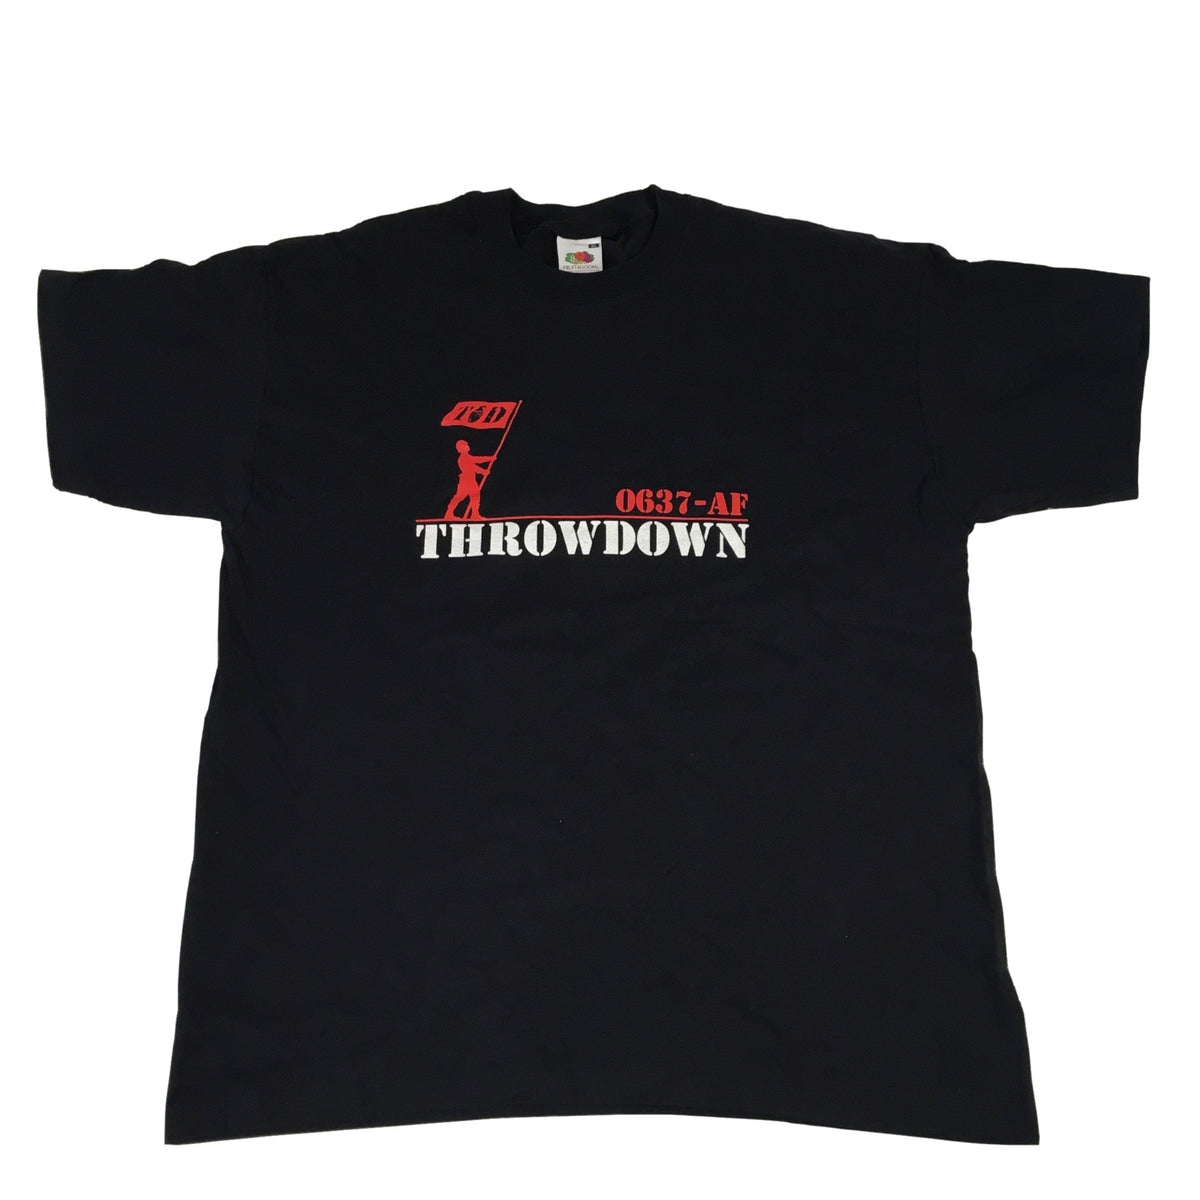 Vintage Throwdown &quot;0637-AF&quot; T-Shirt - jointcustodydc